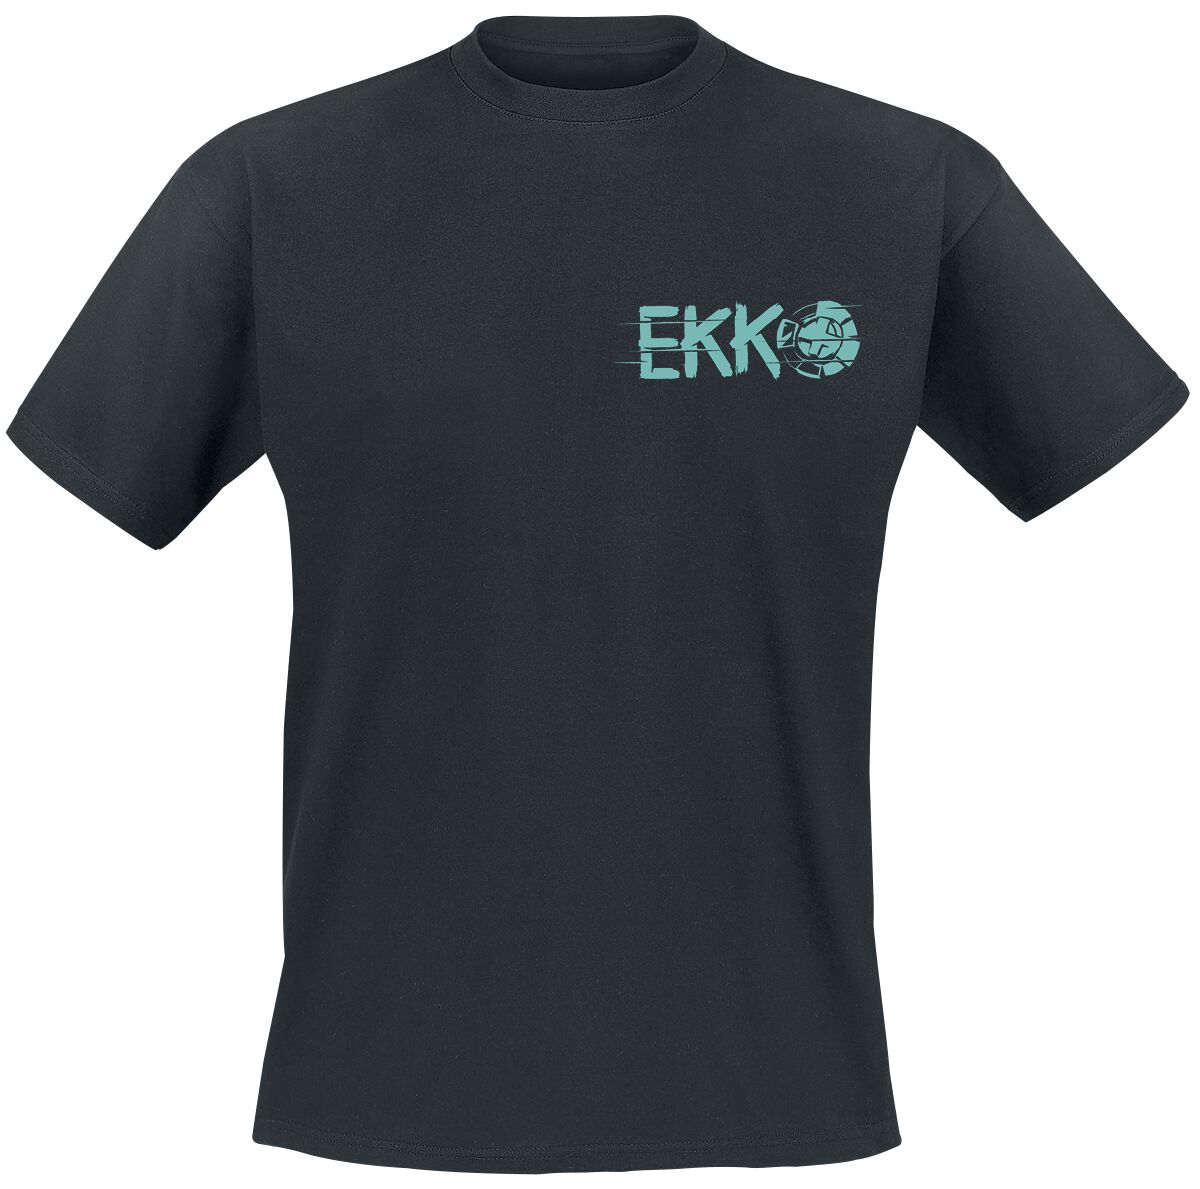 Arcane: League Of Legends - Gaming T-Shirt - Ekko - S bis XL - für Männer - Größe XL - schwarz  - EMP exklusives Merchandise!